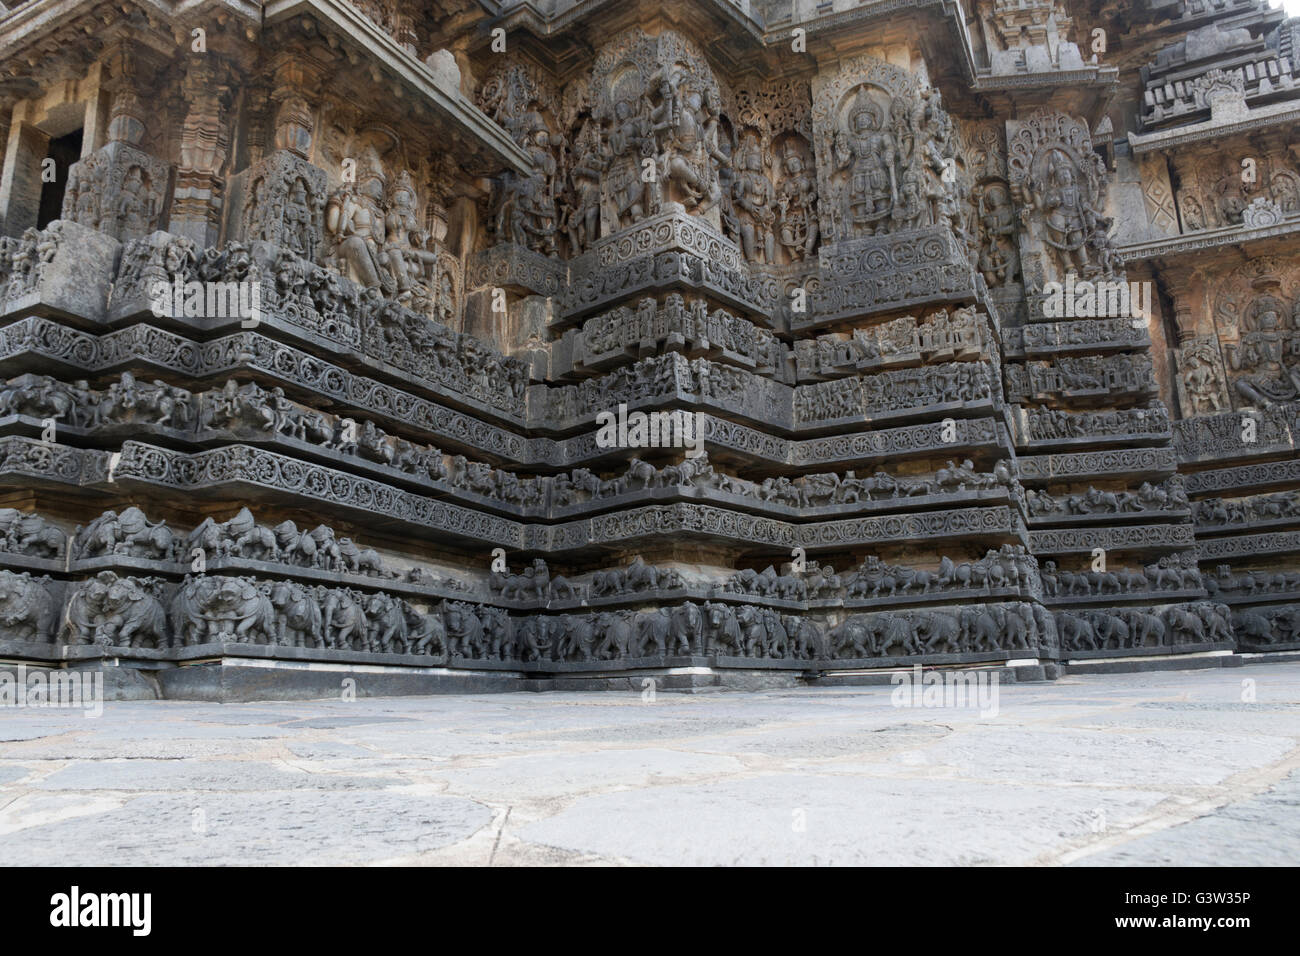 Panneau mural très orné, secours, halebidu temple hoysaleshwara, Karnataka, Inde. vue depuis le sud-ouest. Banque D'Images